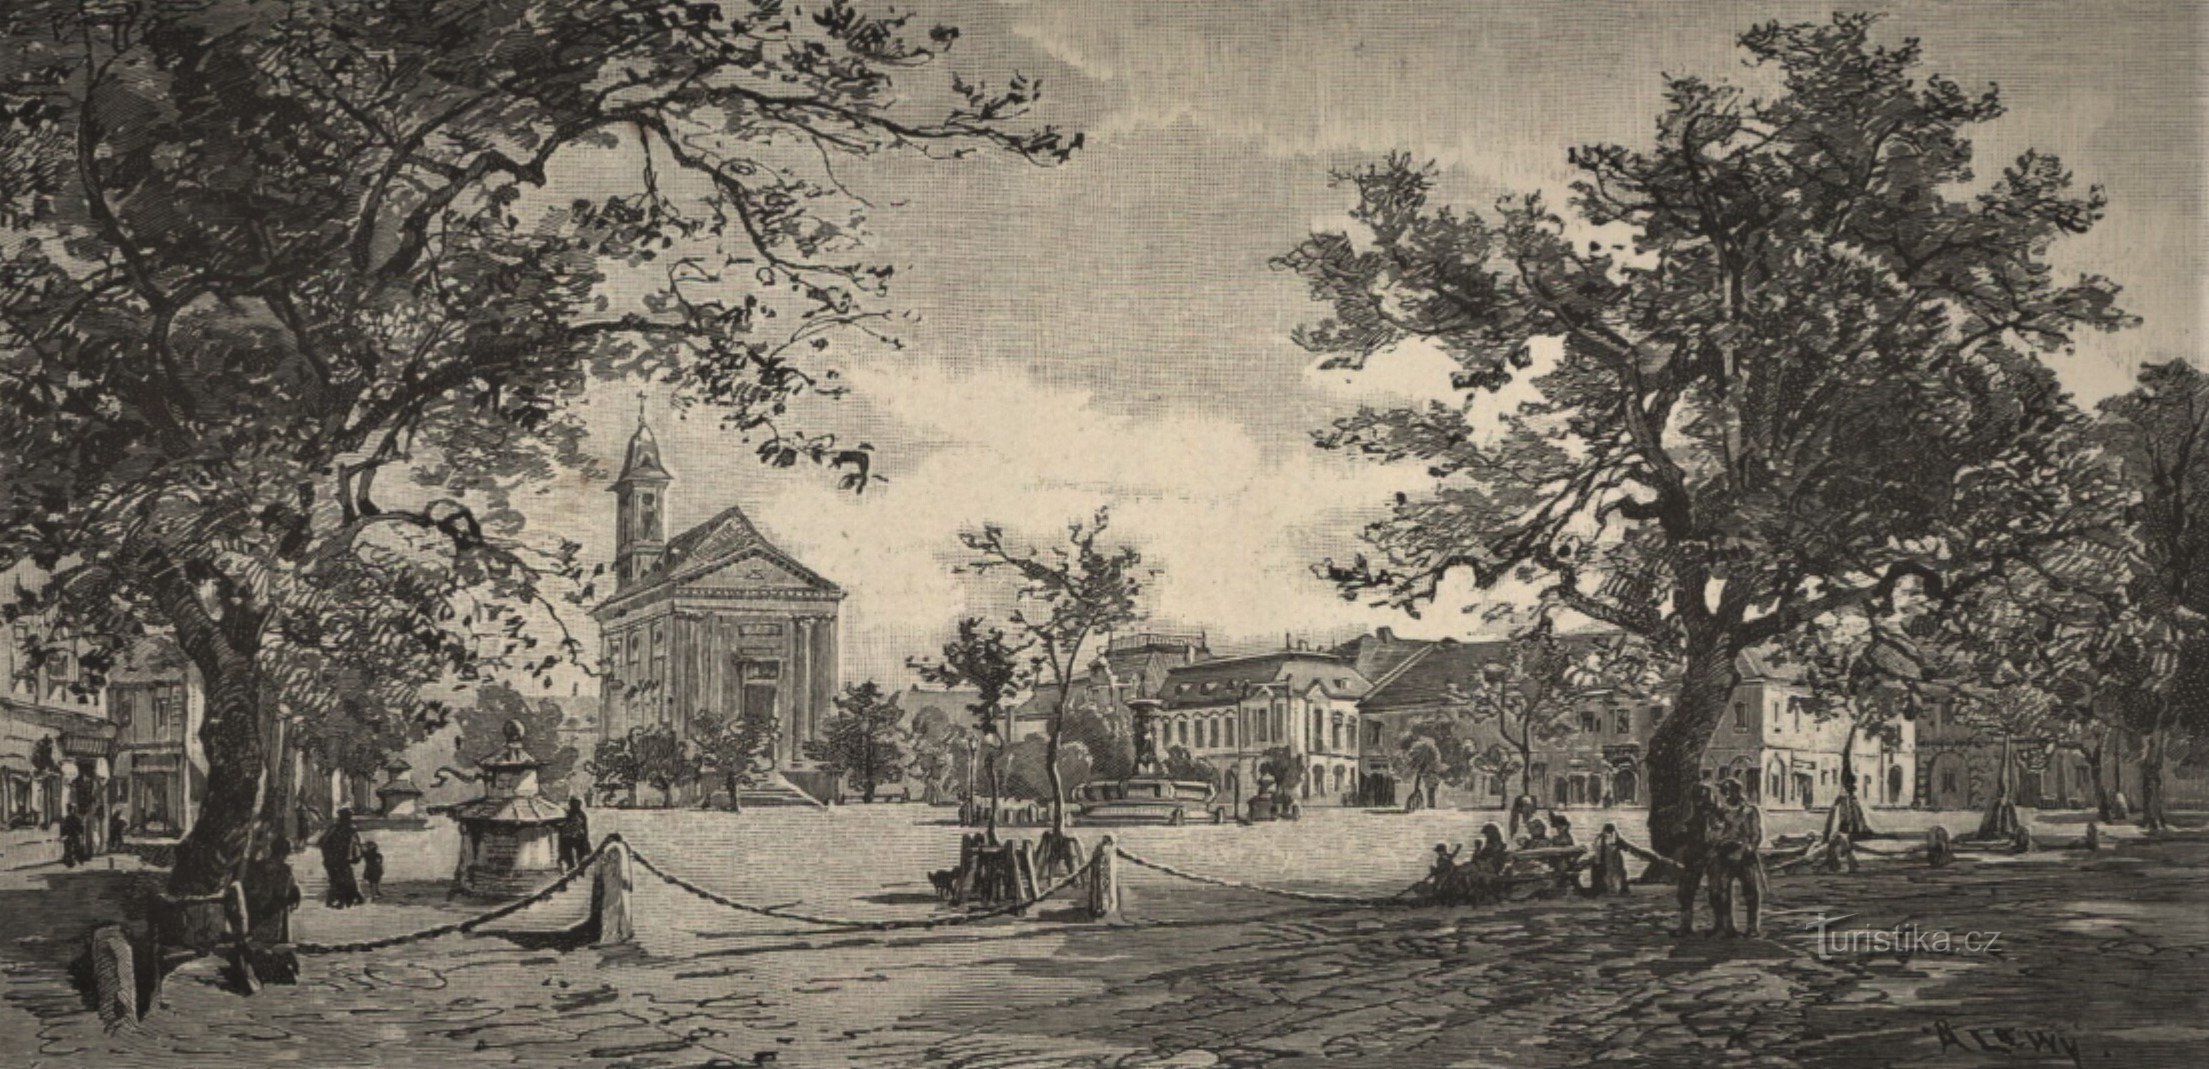 Площадь в Йозефове в конце 19 века.